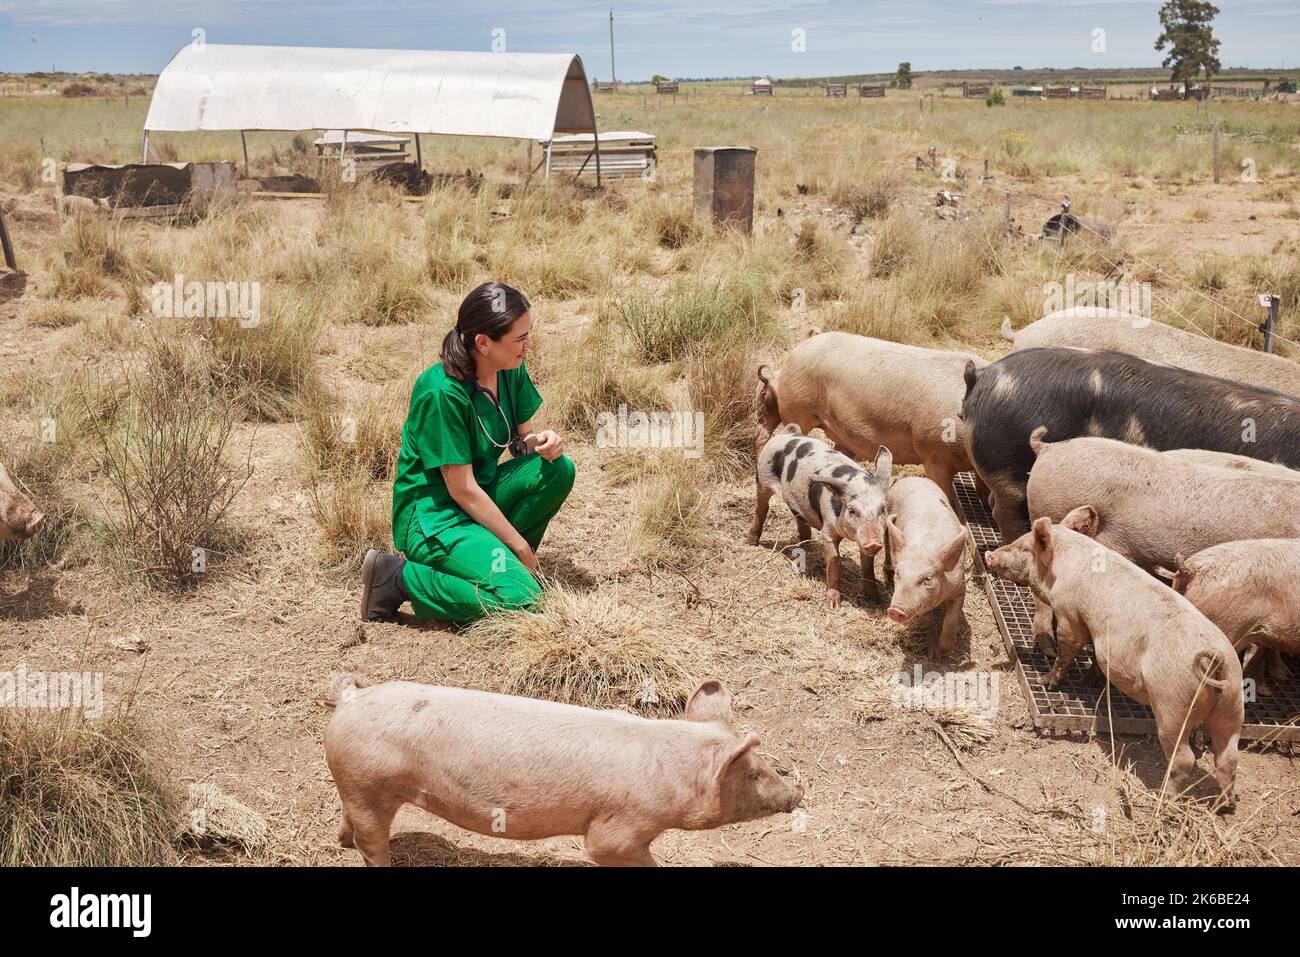 Meine Aufgabe ist es, Tierleiden zu verhindern und zu lindern. Eine Tierärztin auf einem Bauernhof mit Schweinen. Stockfoto